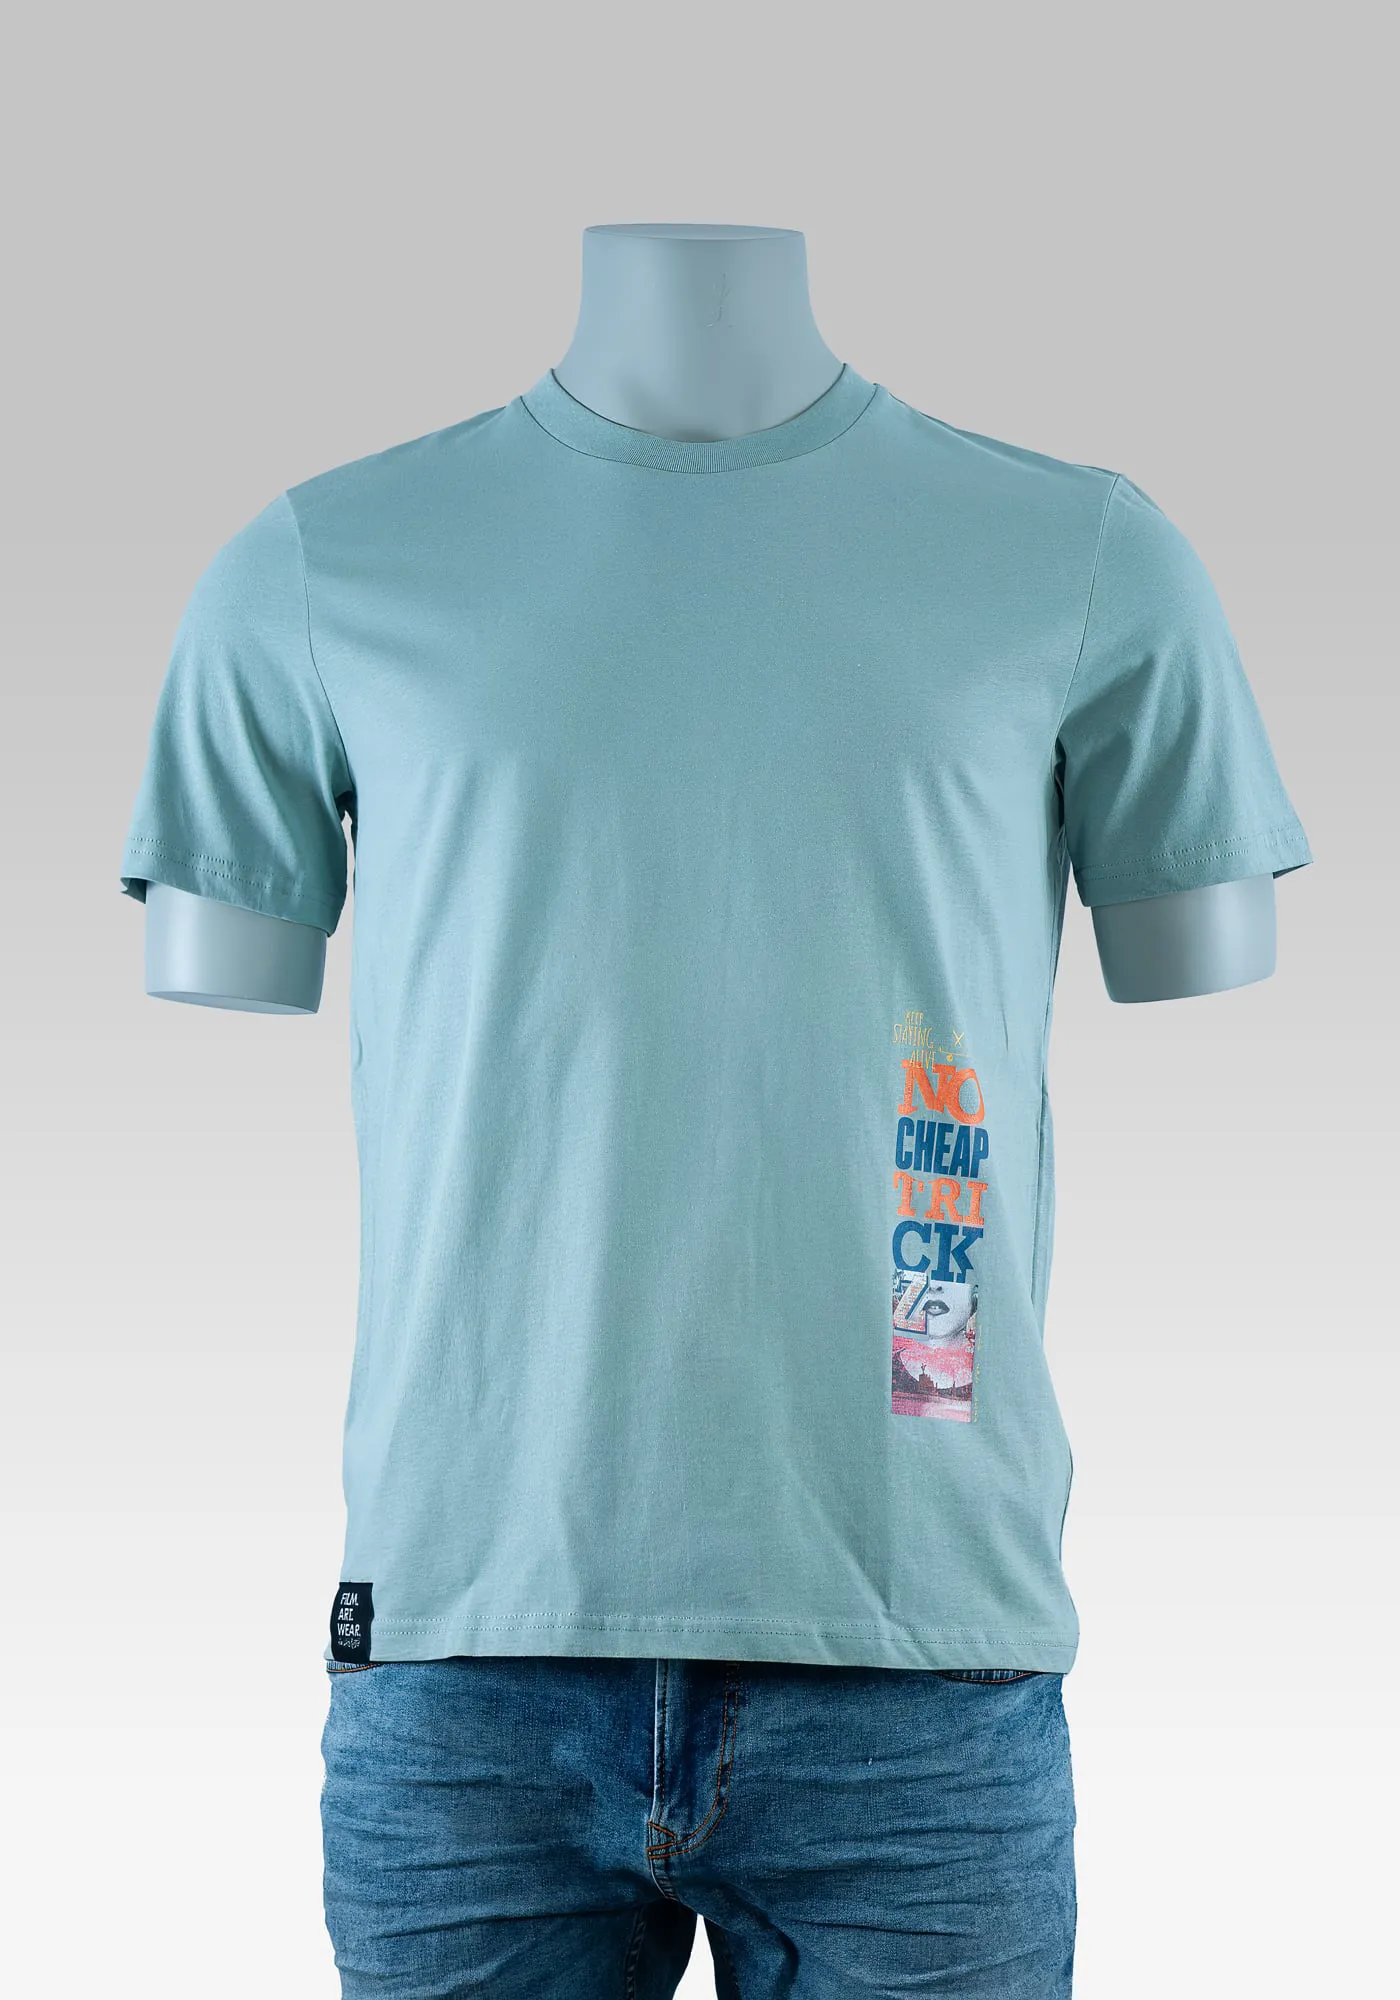 Skater style jungs T-Shirt mit Emblem Print Vorderseite auf Hollowpuppe